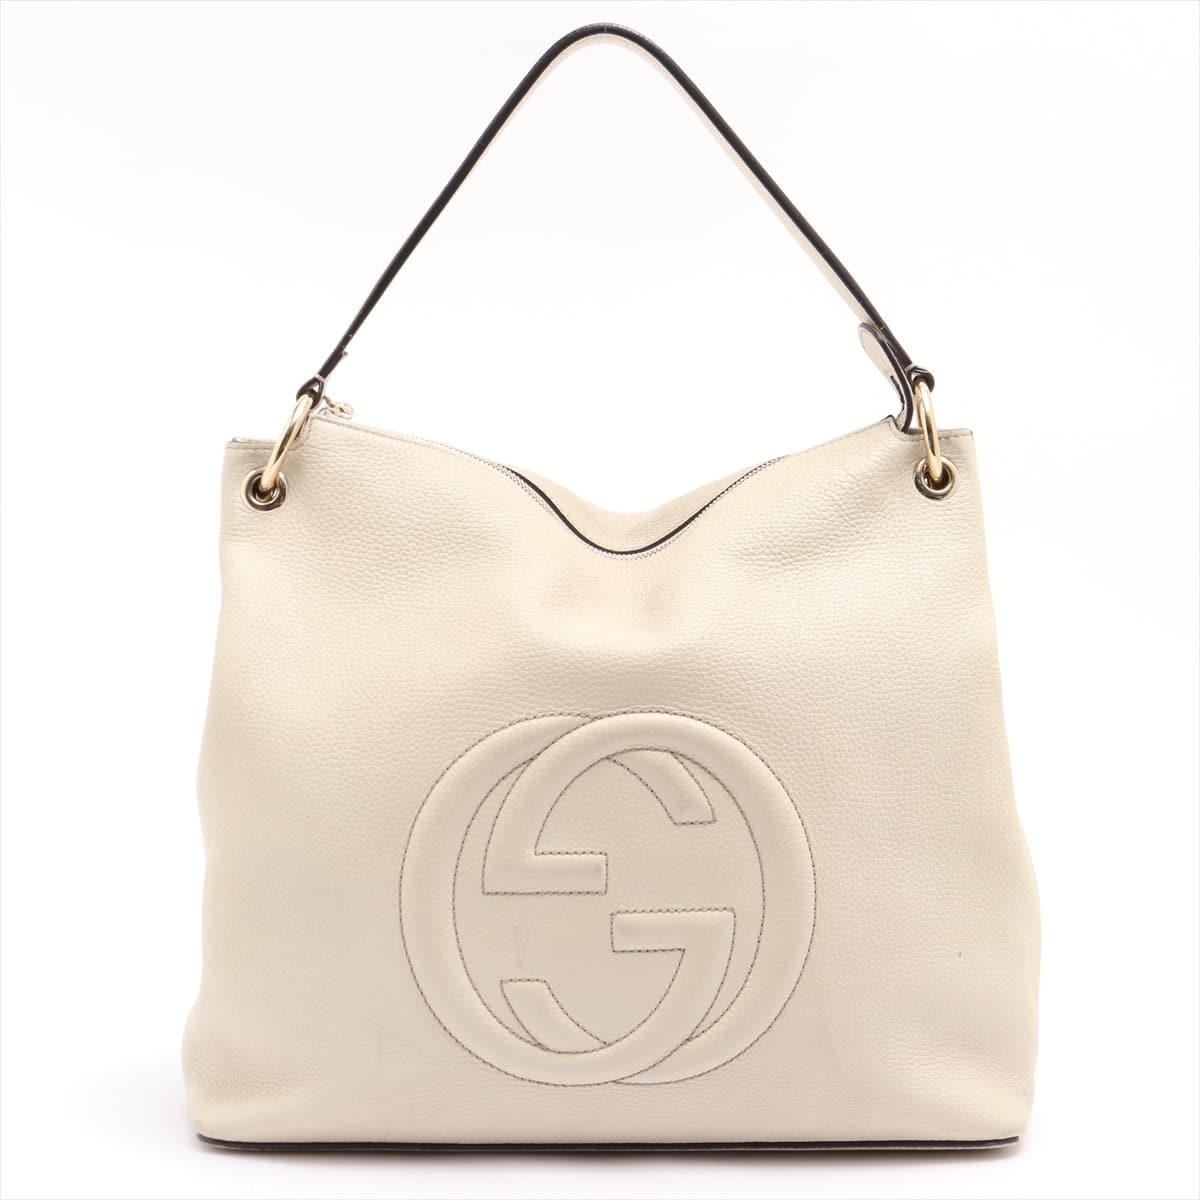 Gucci Soho Leather 2way shoulder bag Beige 408825